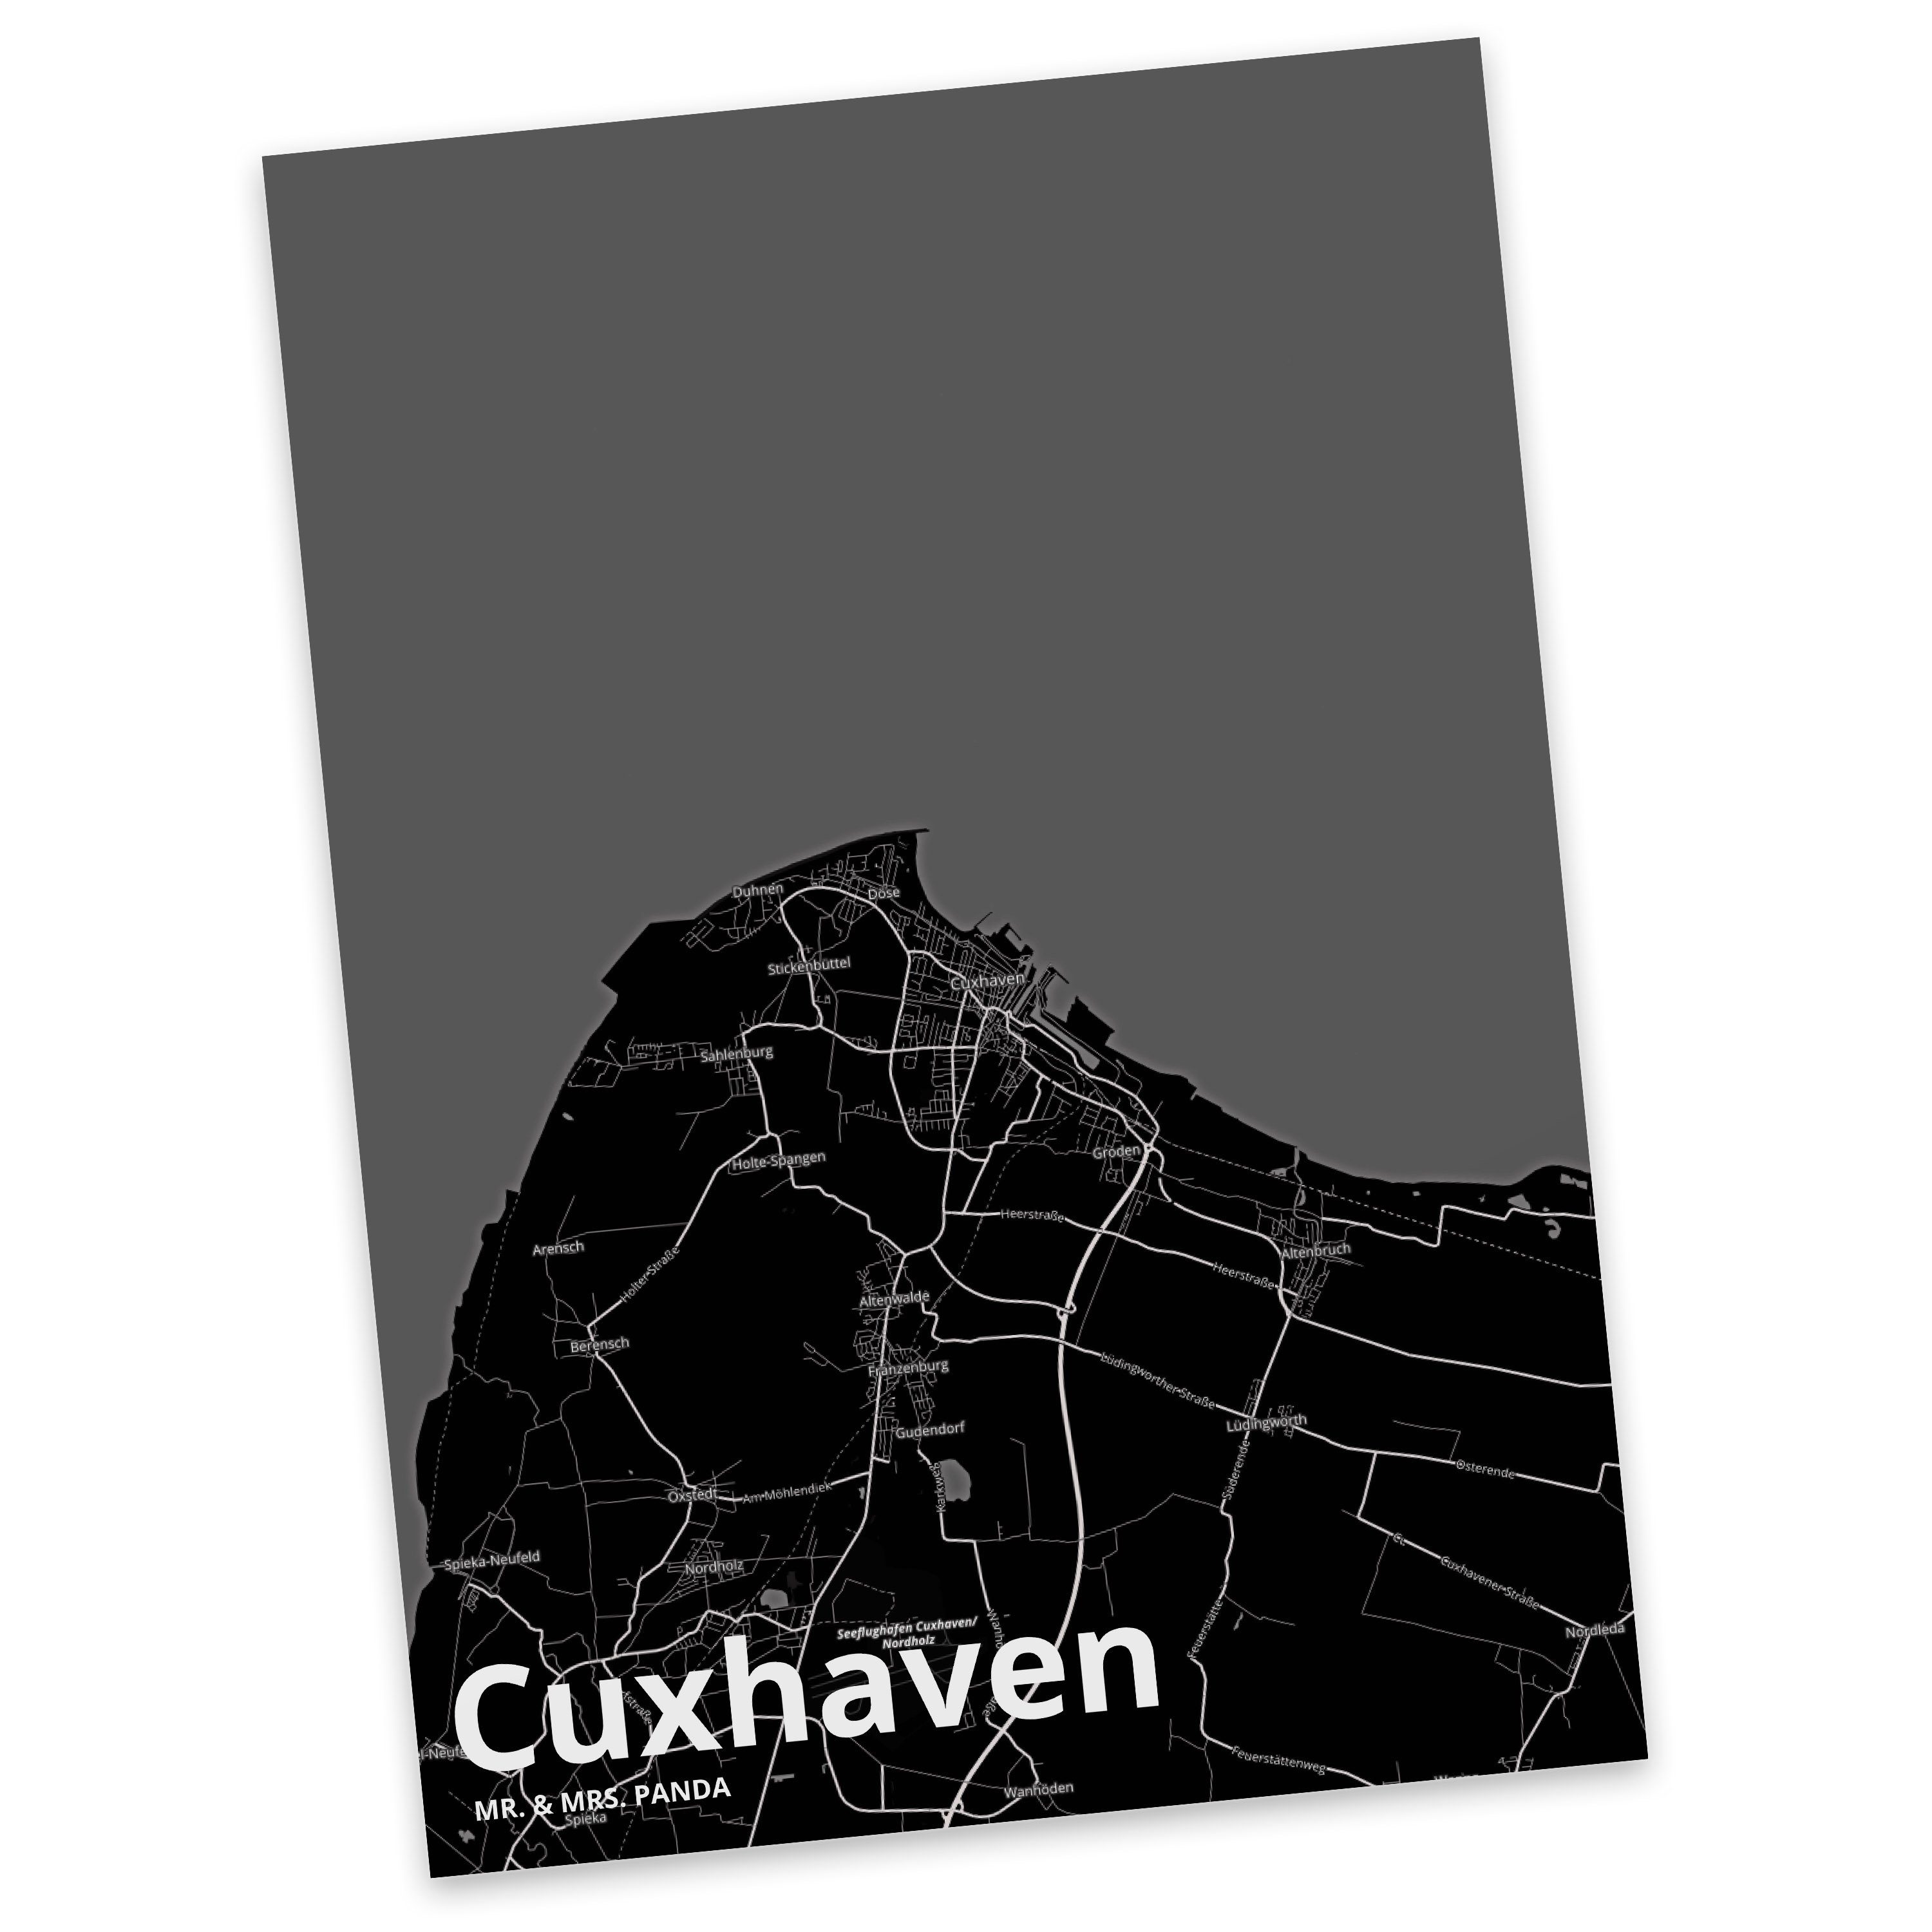 Mr. & Mrs. Panda Postkarte Cuxhaven - Geschenk, Stadt Dorf Karte Landkarte Map Stadtplan, Städte